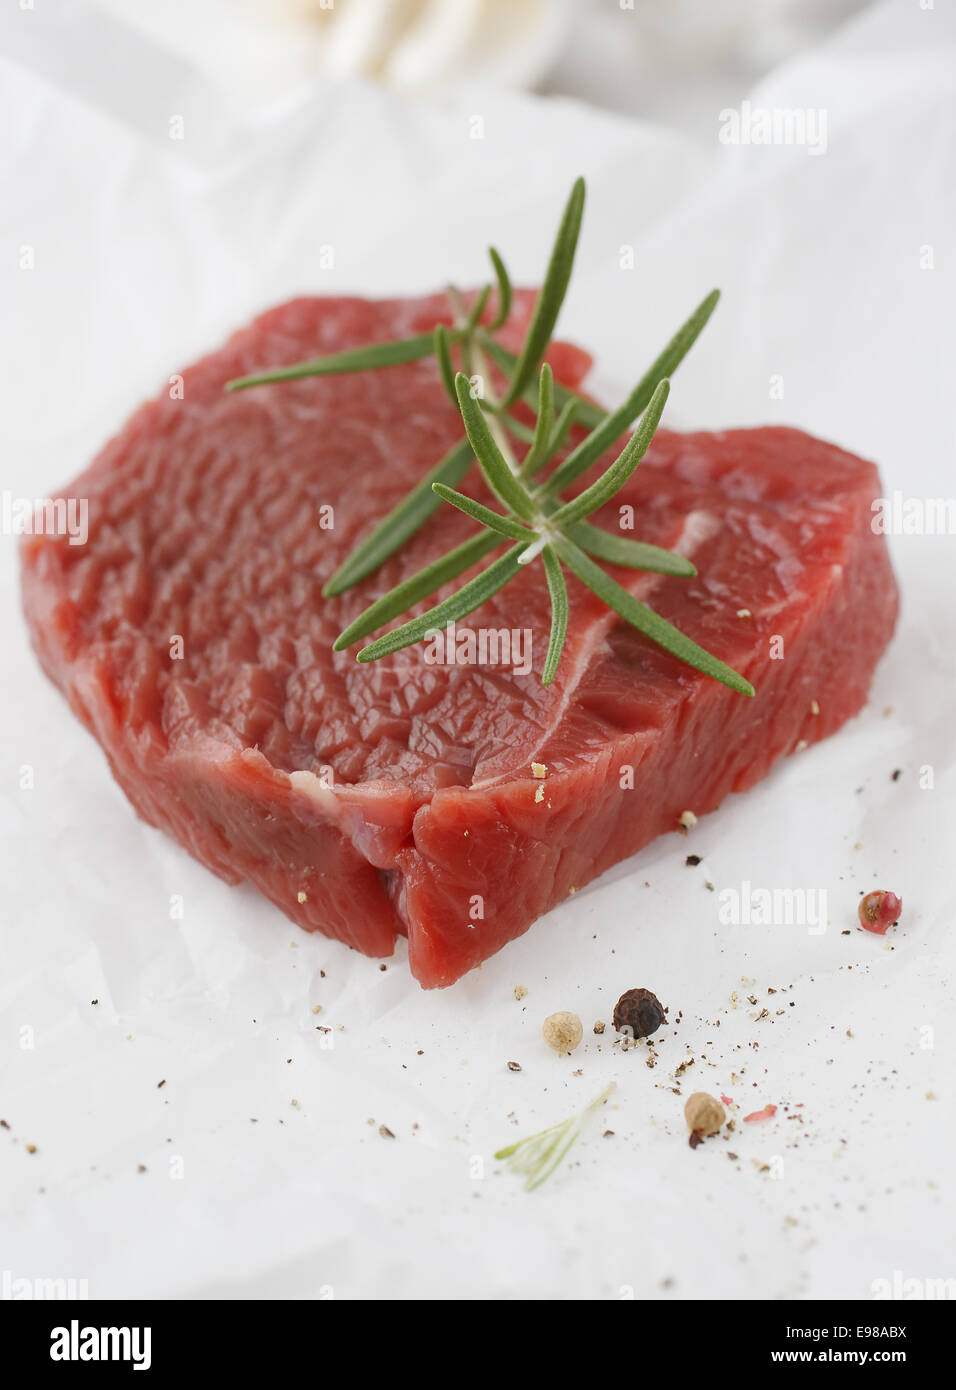 Portion gesunden mageres Steak, garniert mit frischem Rosmarin als Gewürz warten darauf, für eine nahrhafte Mahlzeit gekocht werden Stockfoto